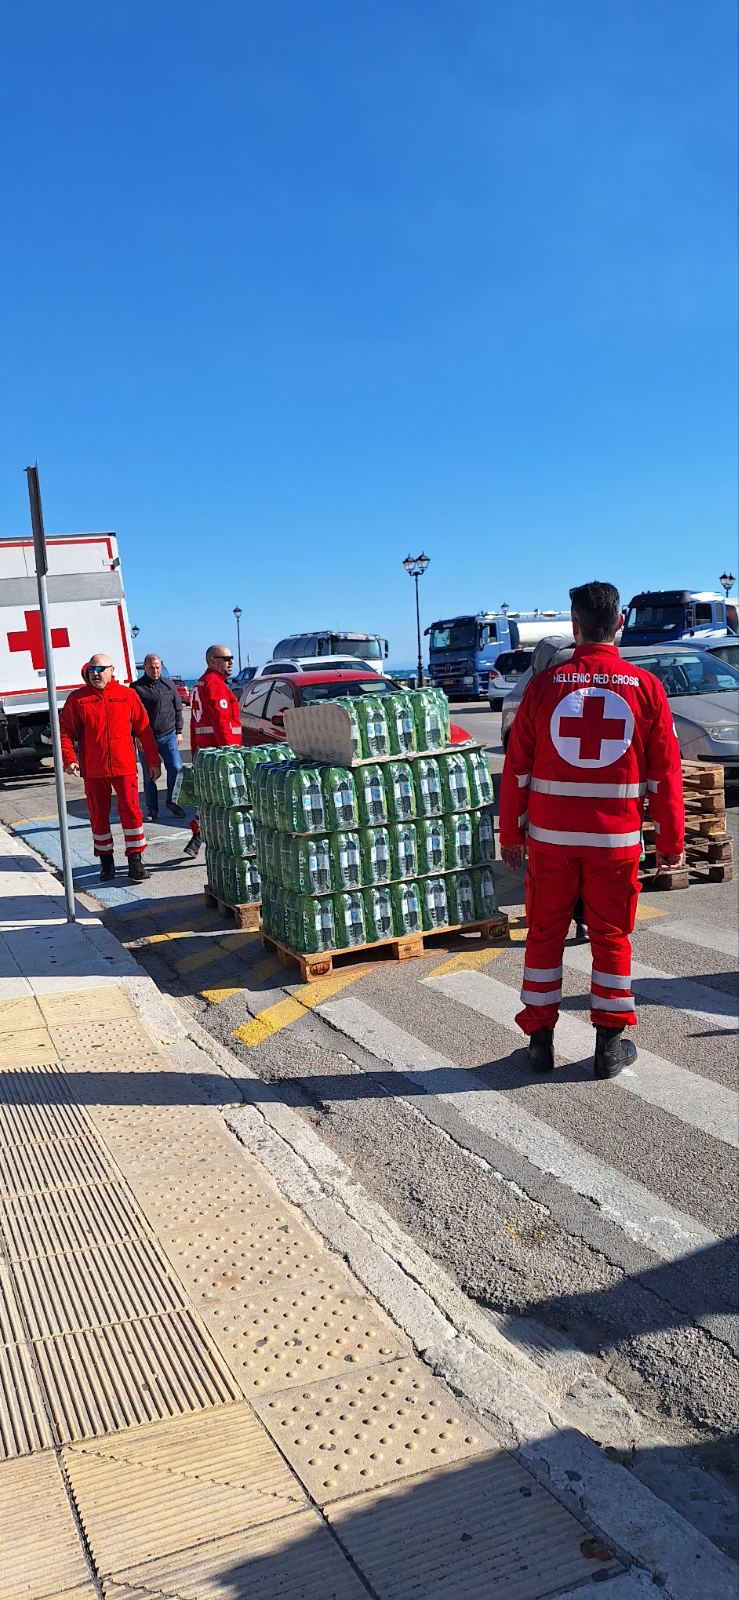 Ο Ελληνικός Ερυθρός Σταυρός μοίρασε ξανά εμφιαλωμένα μπουκάλια νερό στους πολίτες της Ζακύνθου